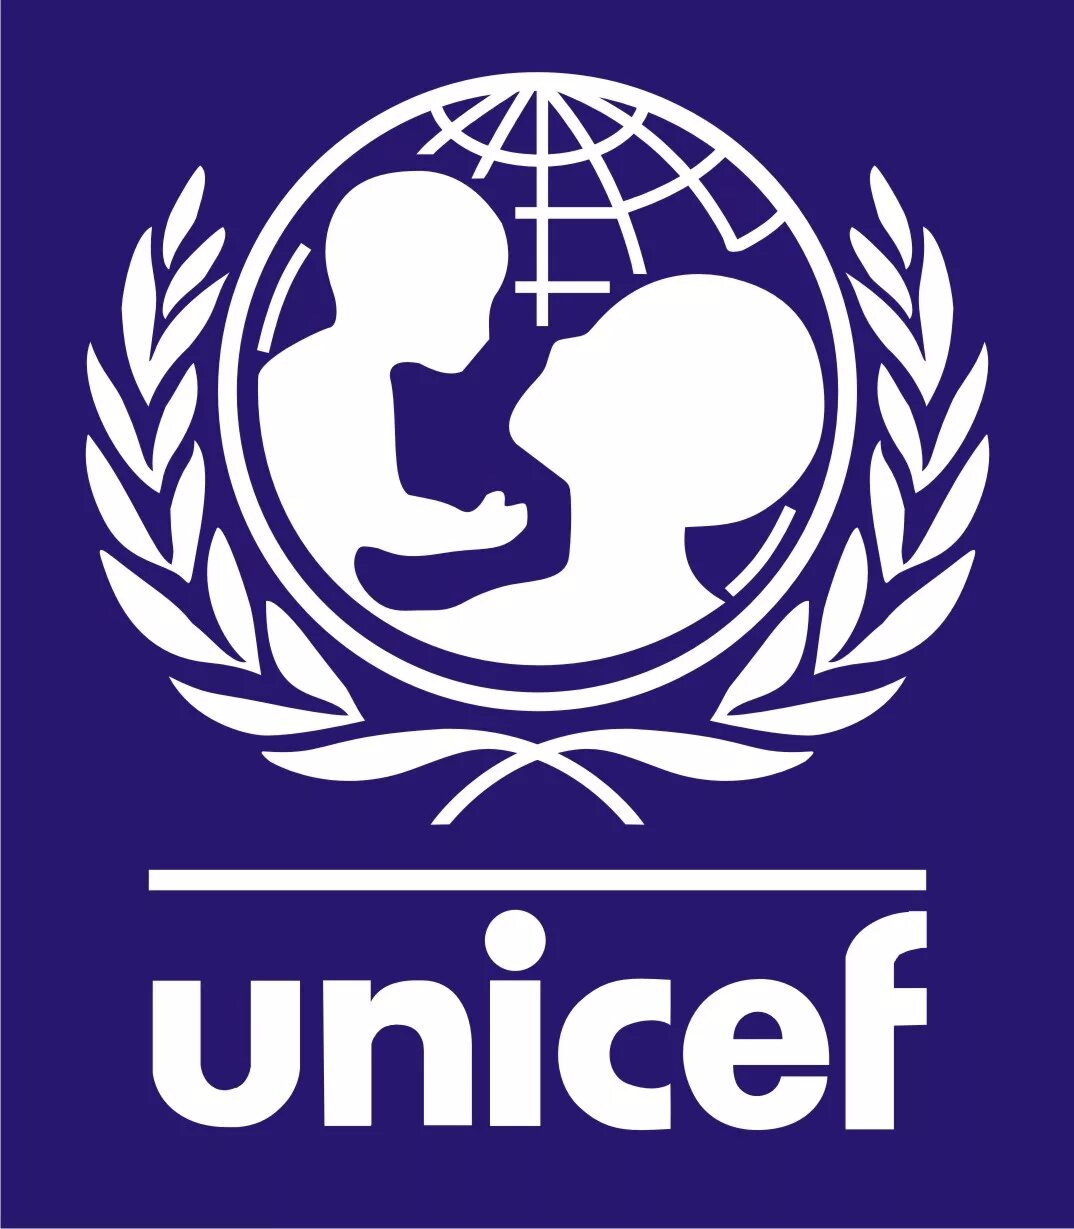 ЮНИСЕФ. Знак ЮНИСЕФ. UNICEF значок. Unic логотип.